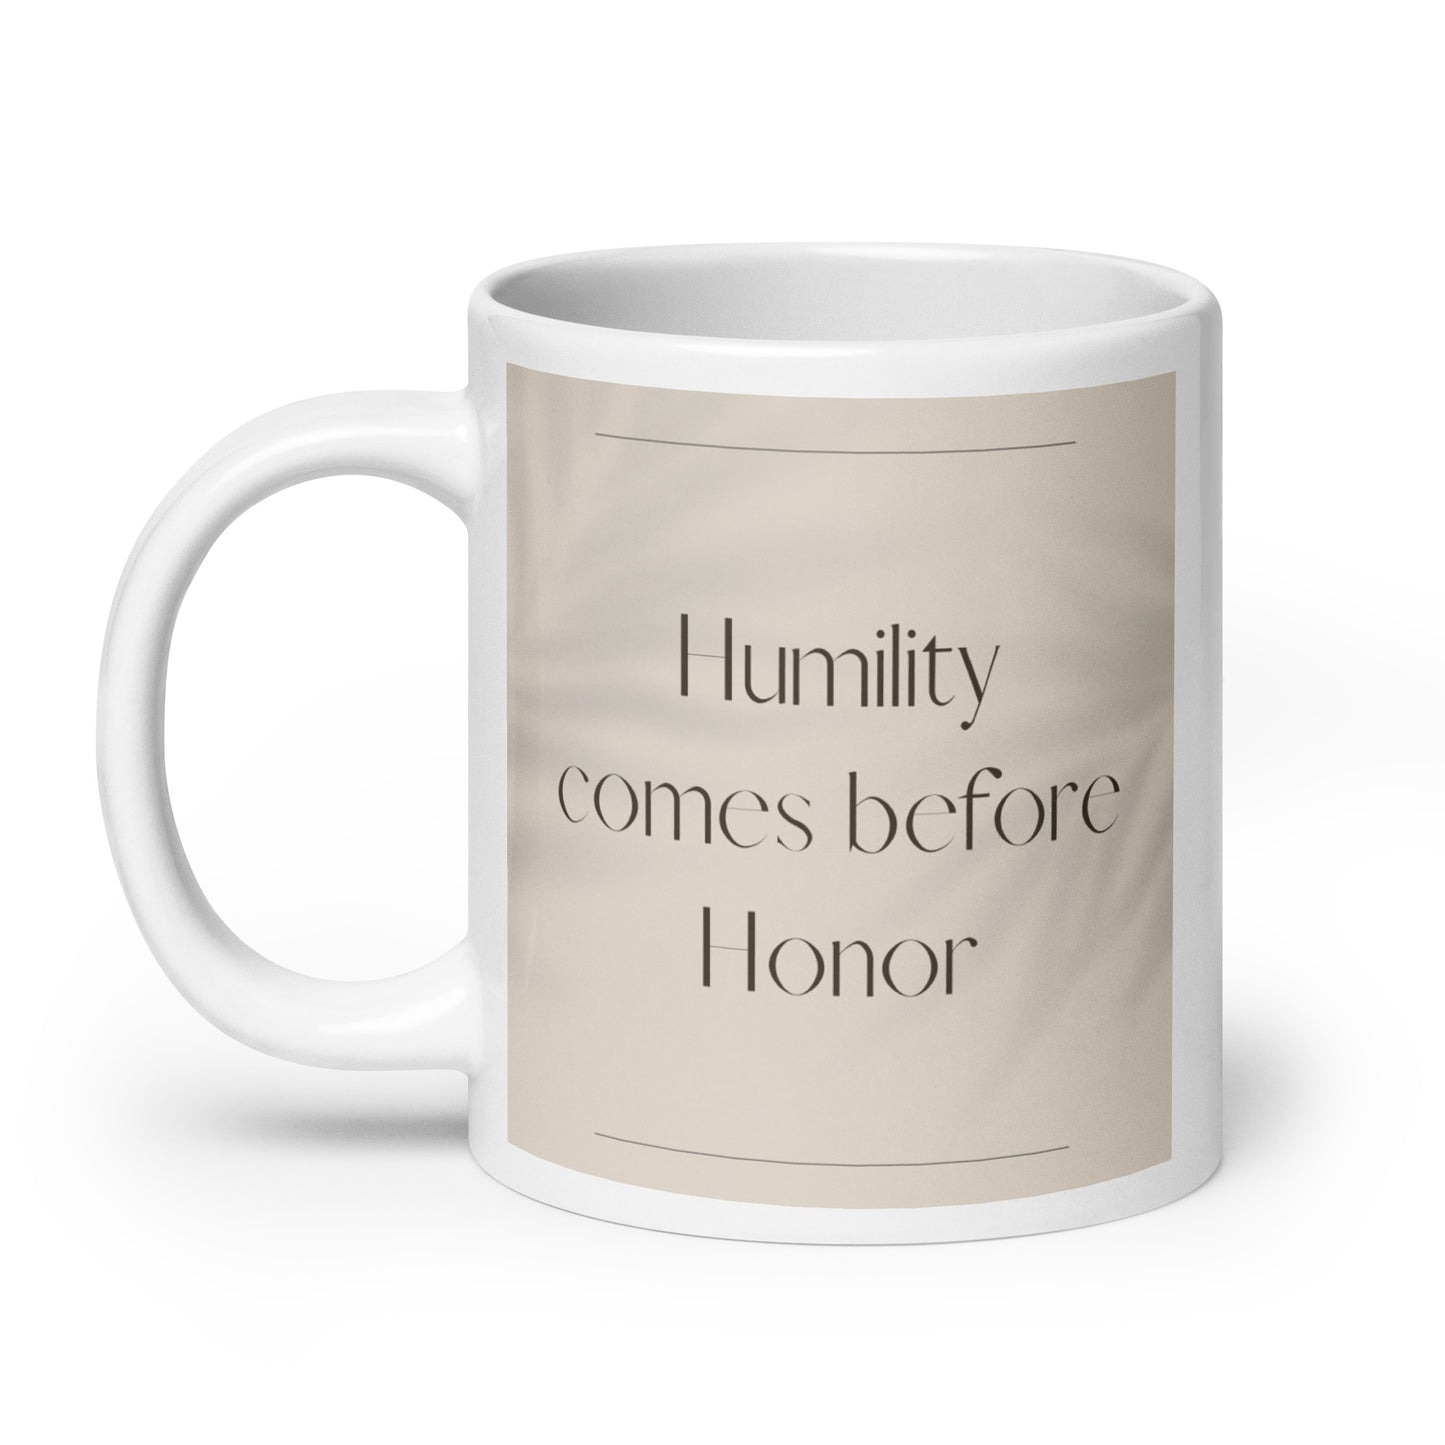 Humility comes before honor Elegant White glossy mug